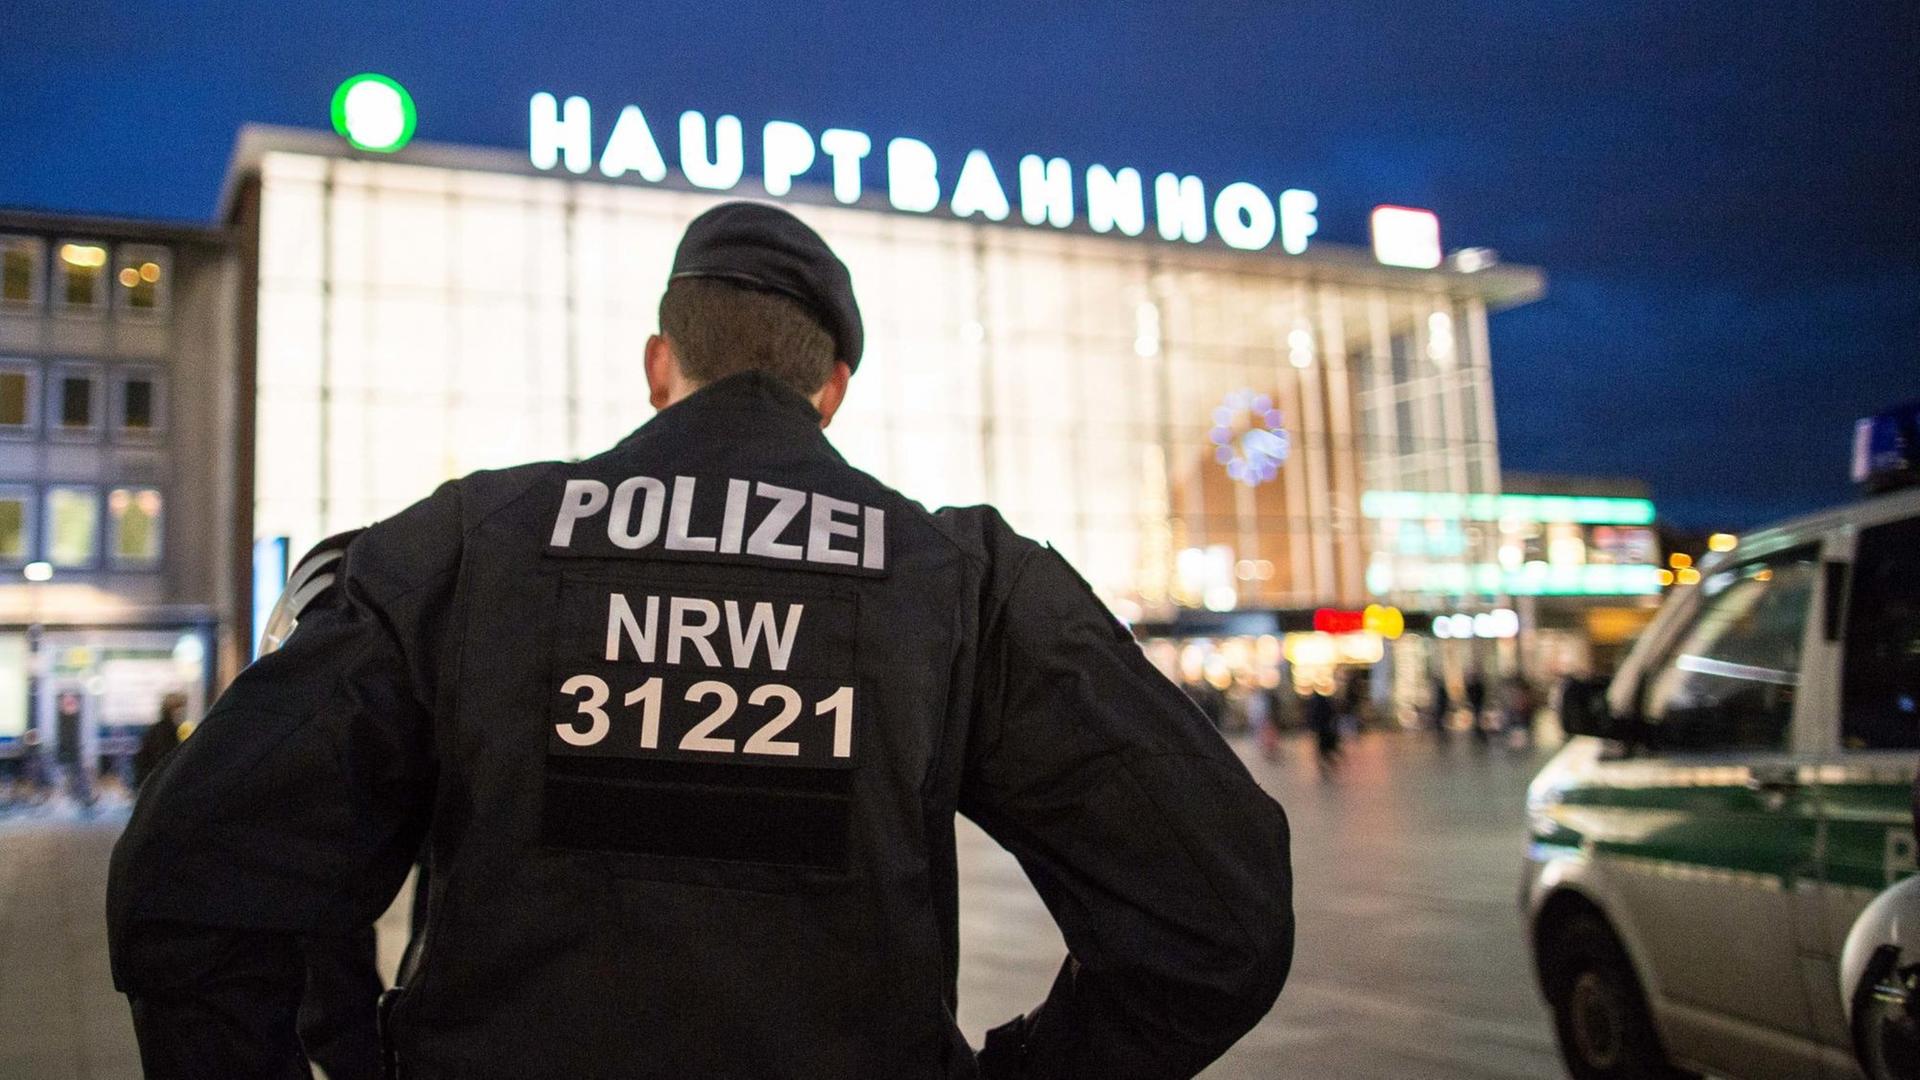 Ein Polizist steht am 06.01.2016 in Köln (Nordrhein-Westfalen) vor dem Hauptbahnhof. Nach den sexuellen Übergriffen auf Frauen in der Silvesternacht verstärkt die Polizei die Präsenz am Hauptbahnhof.